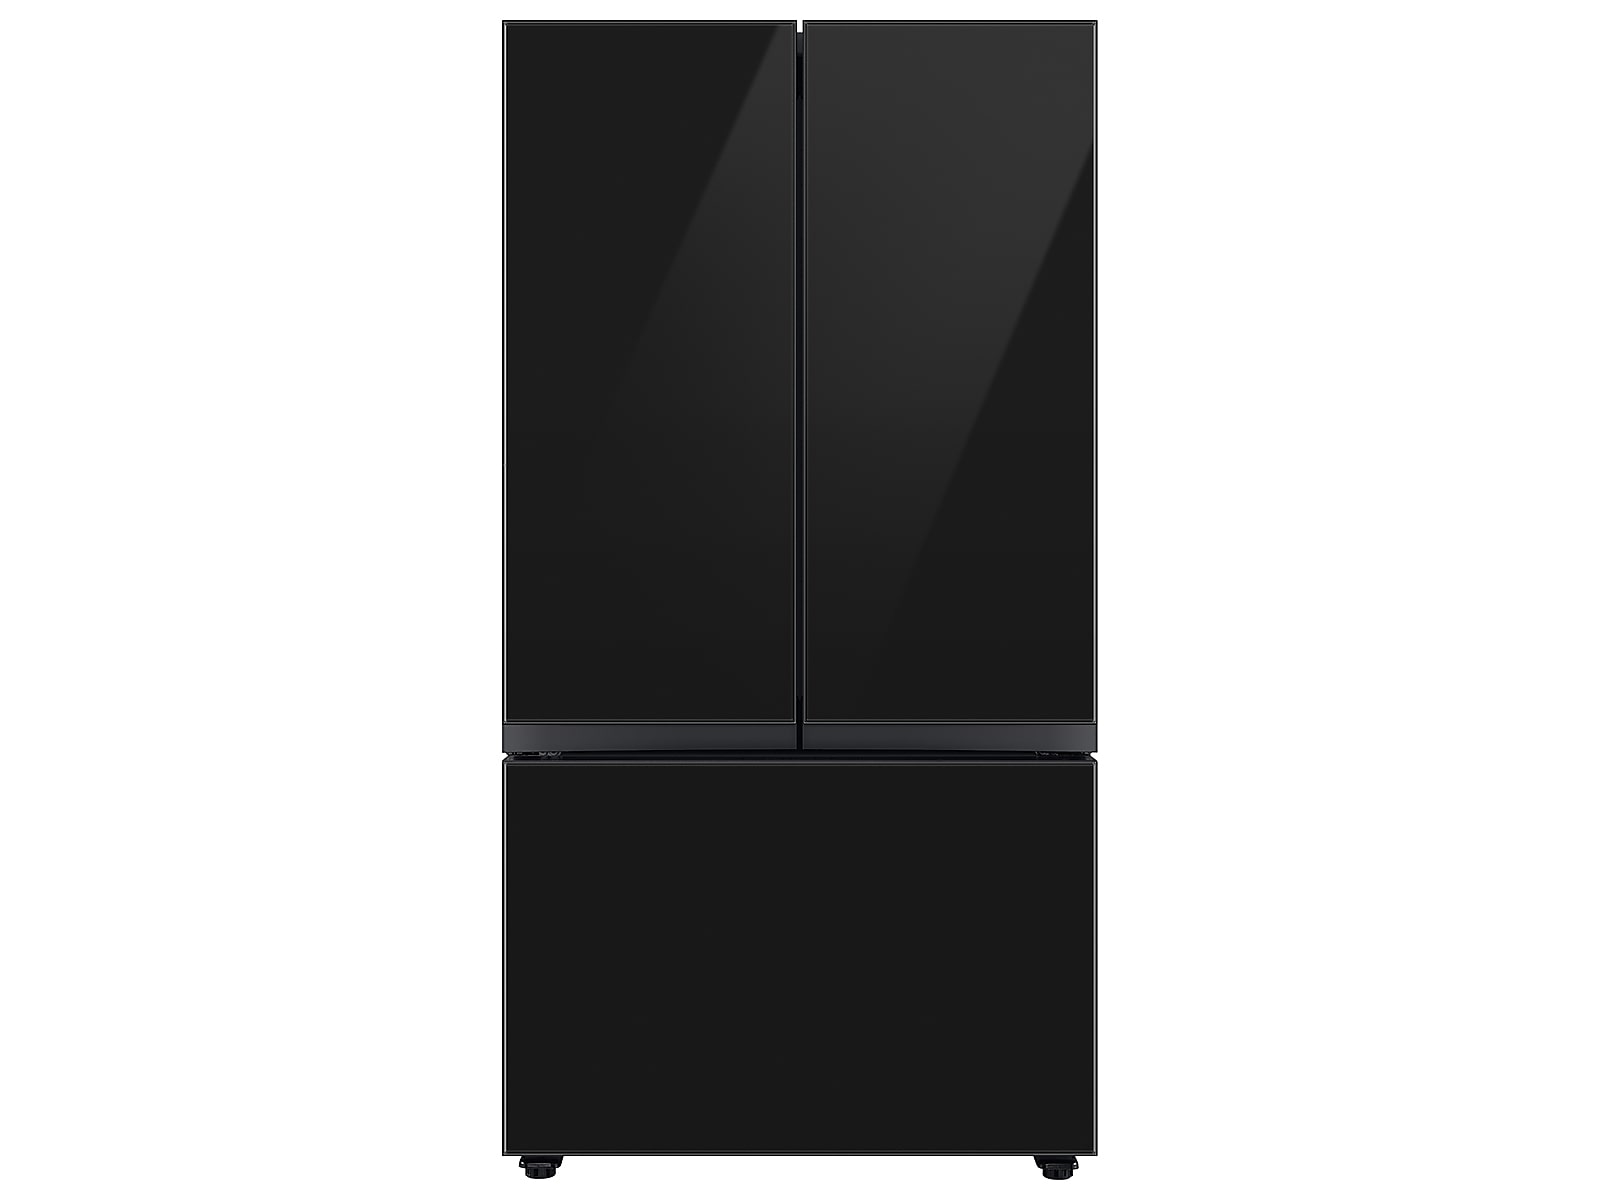 Samsung Bespoke 3-Door French Door Refrigerator (24 cu. ft.) with Beverage Center™ in Charcoal Glass(BNDL-1650310148208)